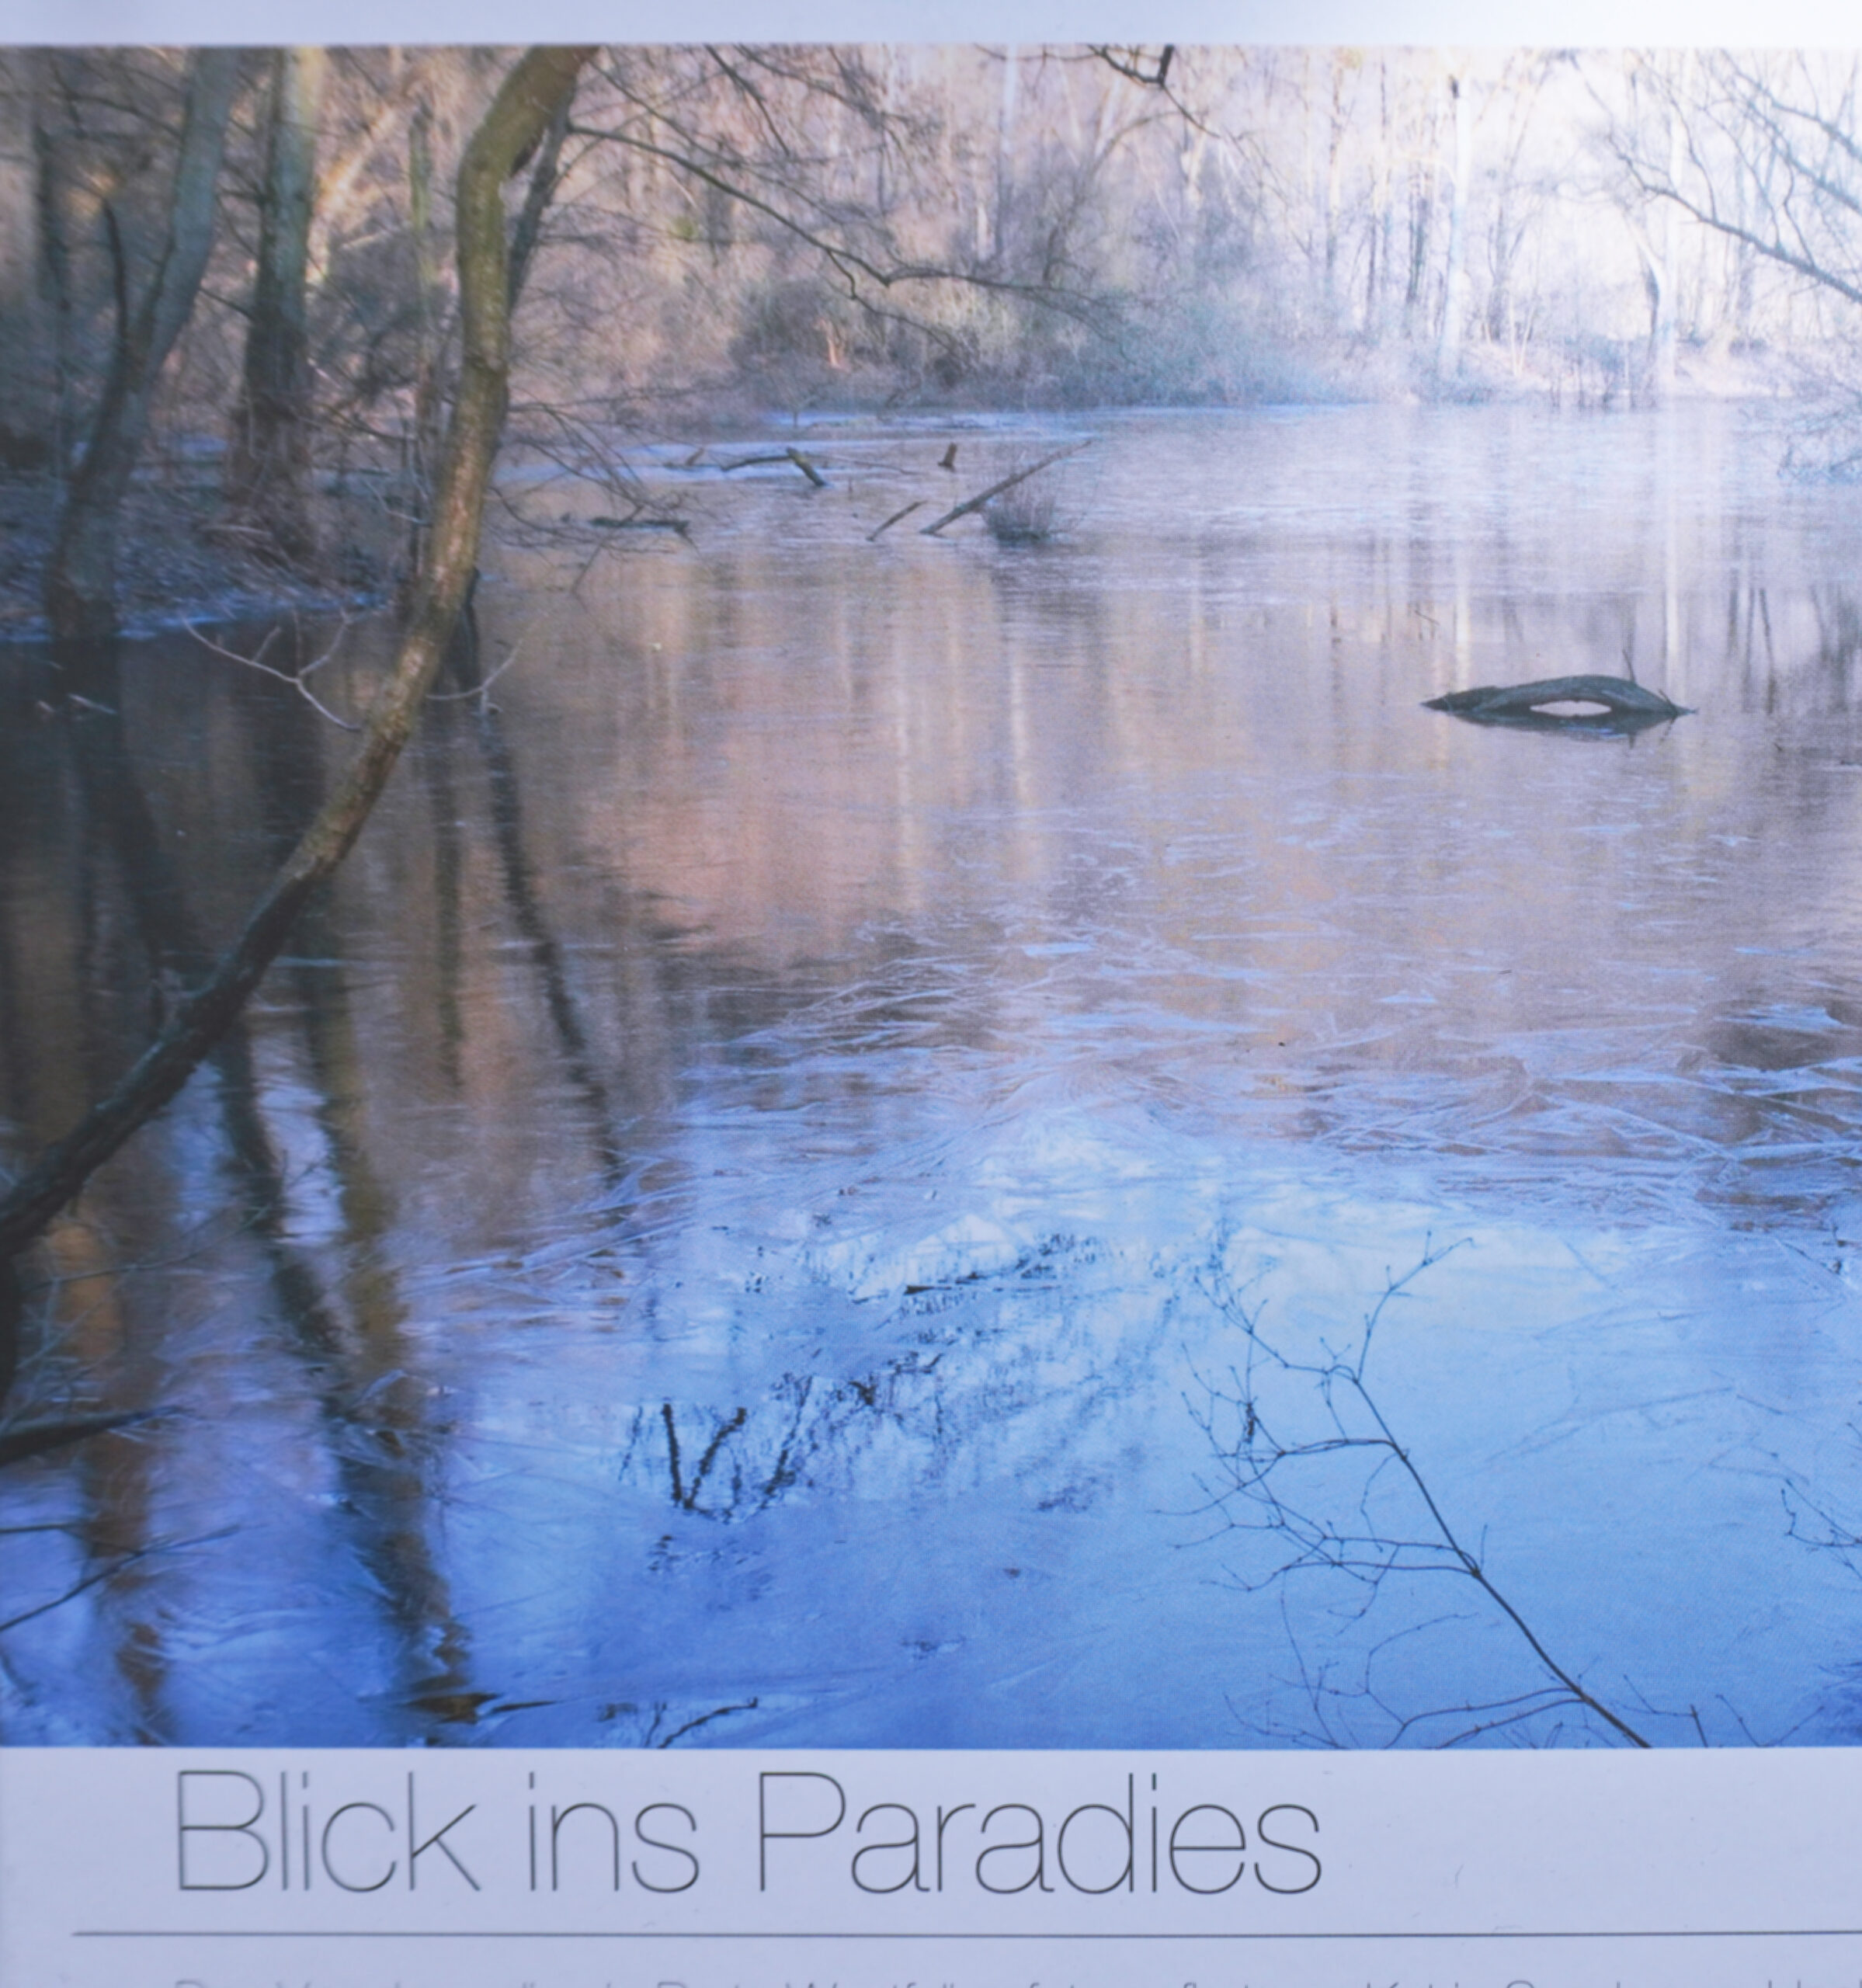 BLICK INS PARADIES: Natur-Fotografie-Bildband, Katrin Sandmann-Henkel, 96 Seiten